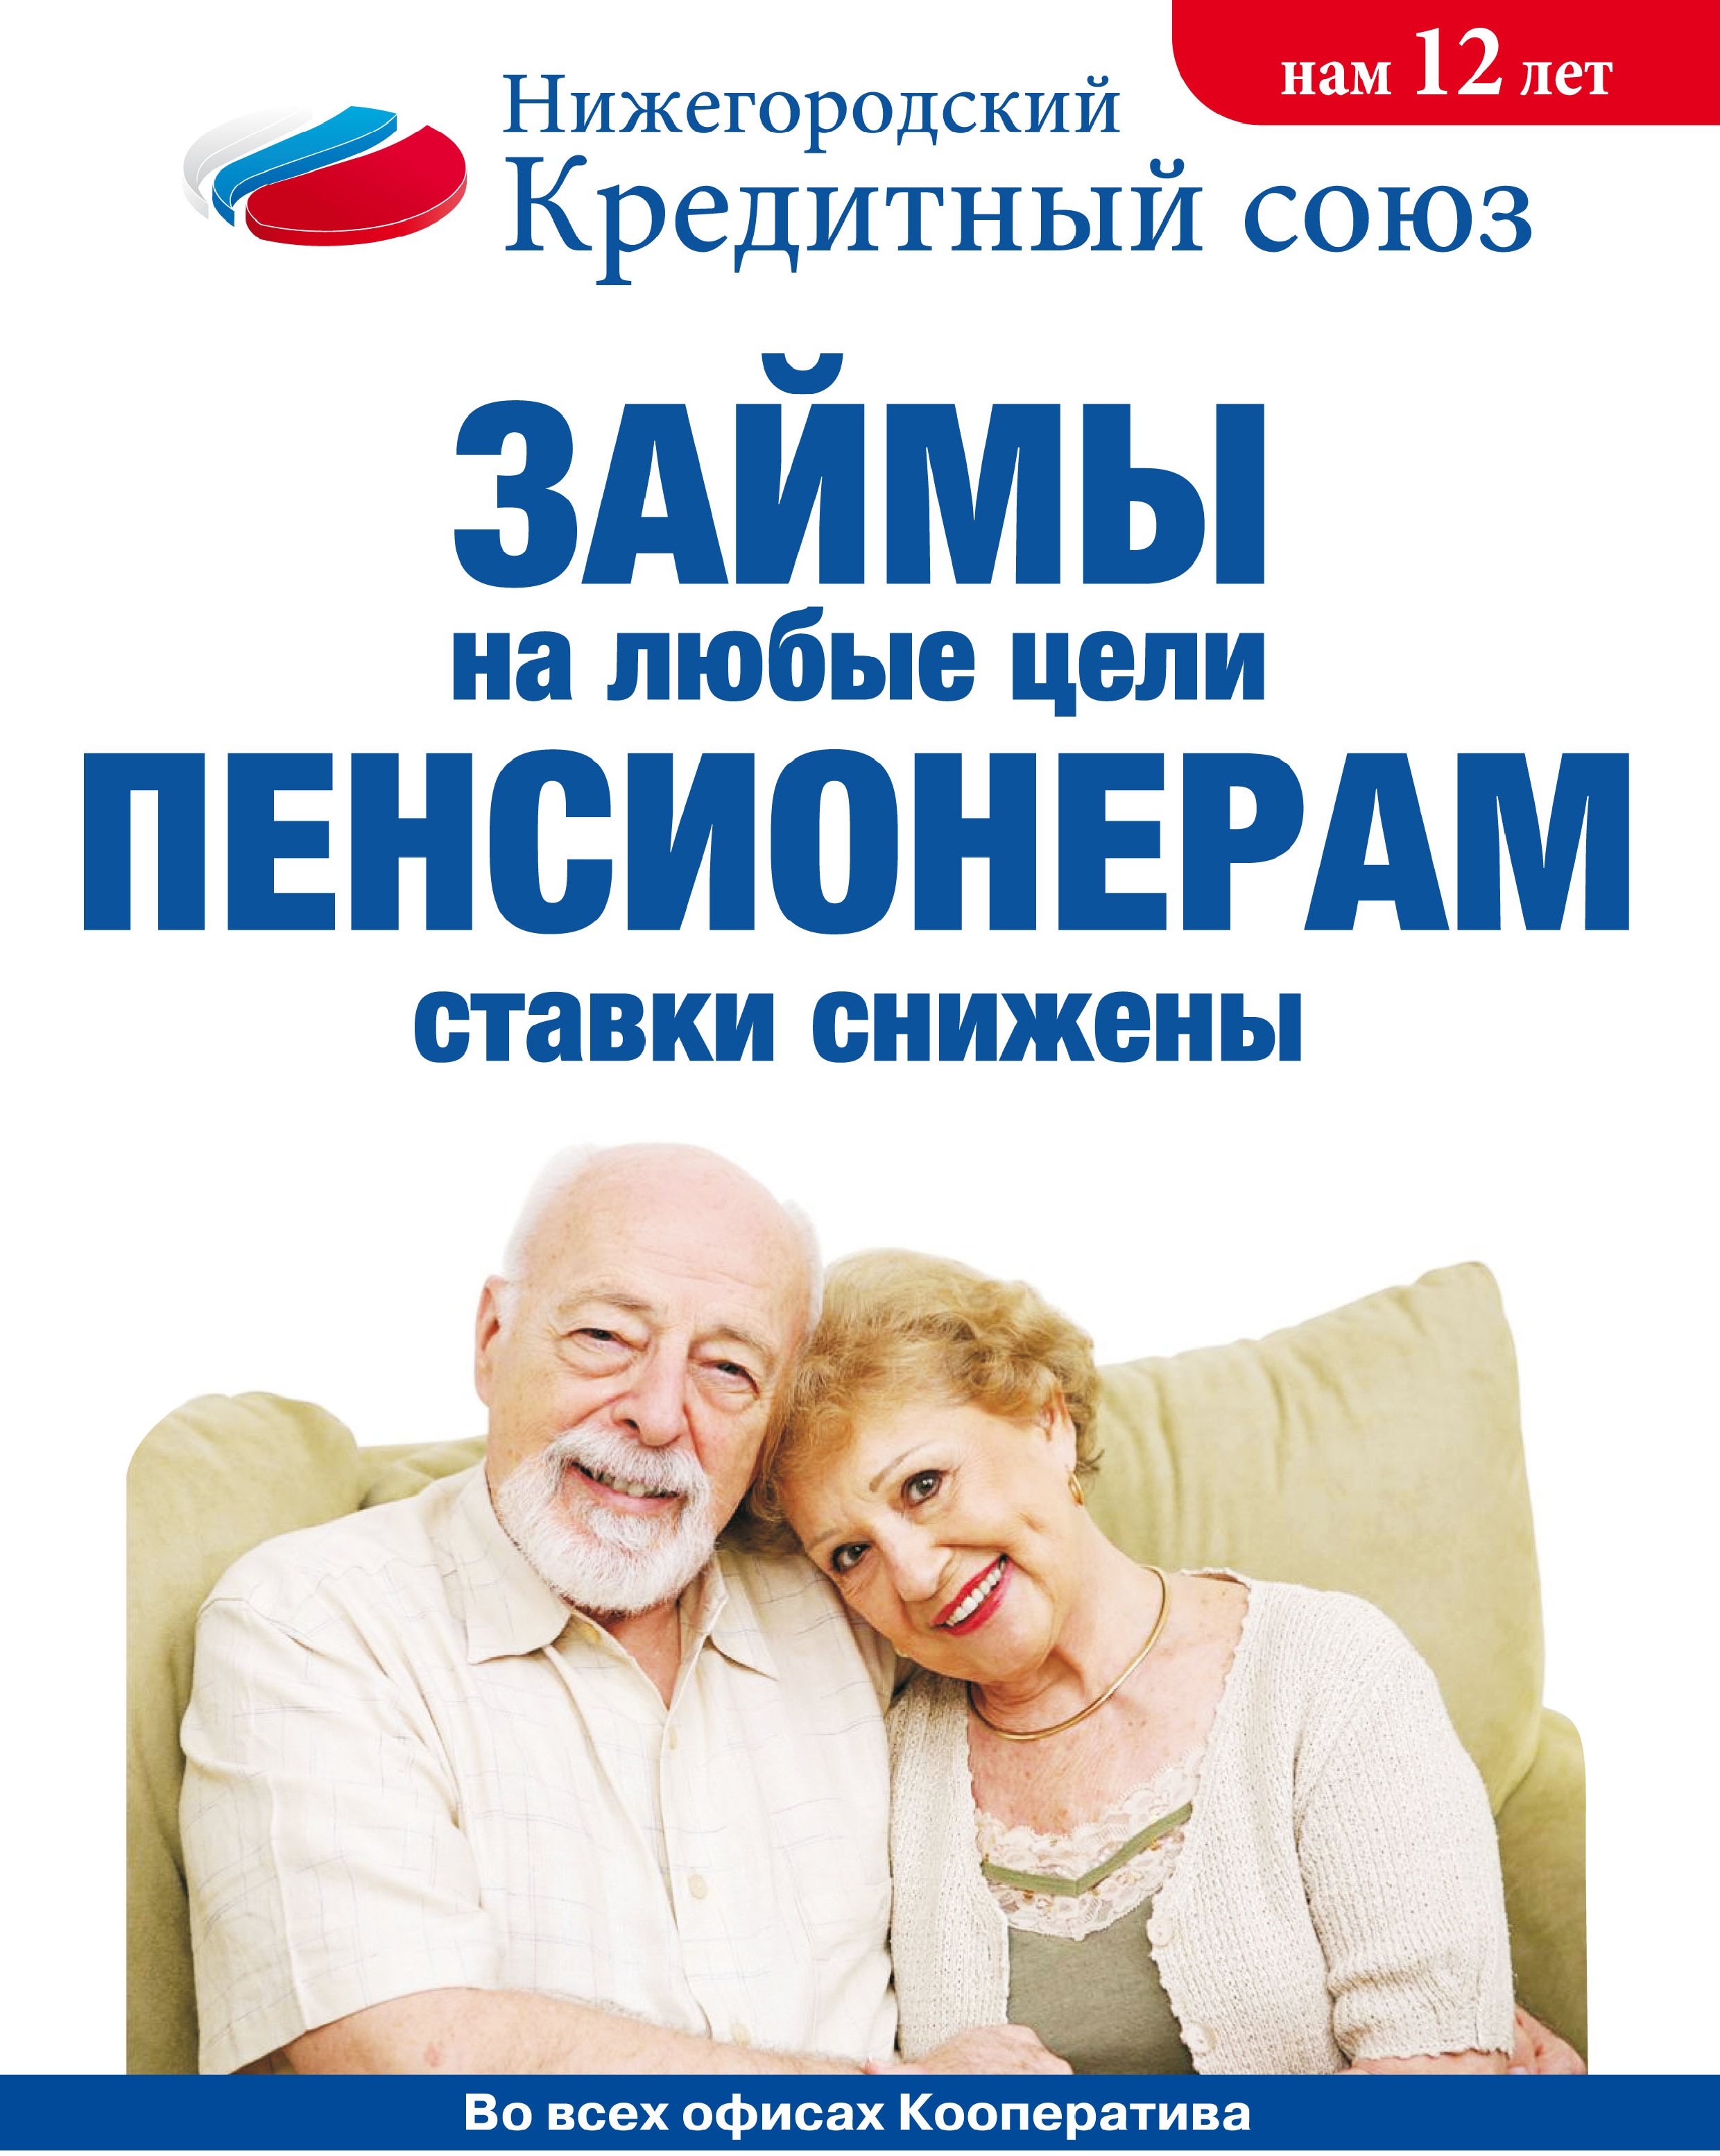 Кредитные займы пенсионерам онлайн